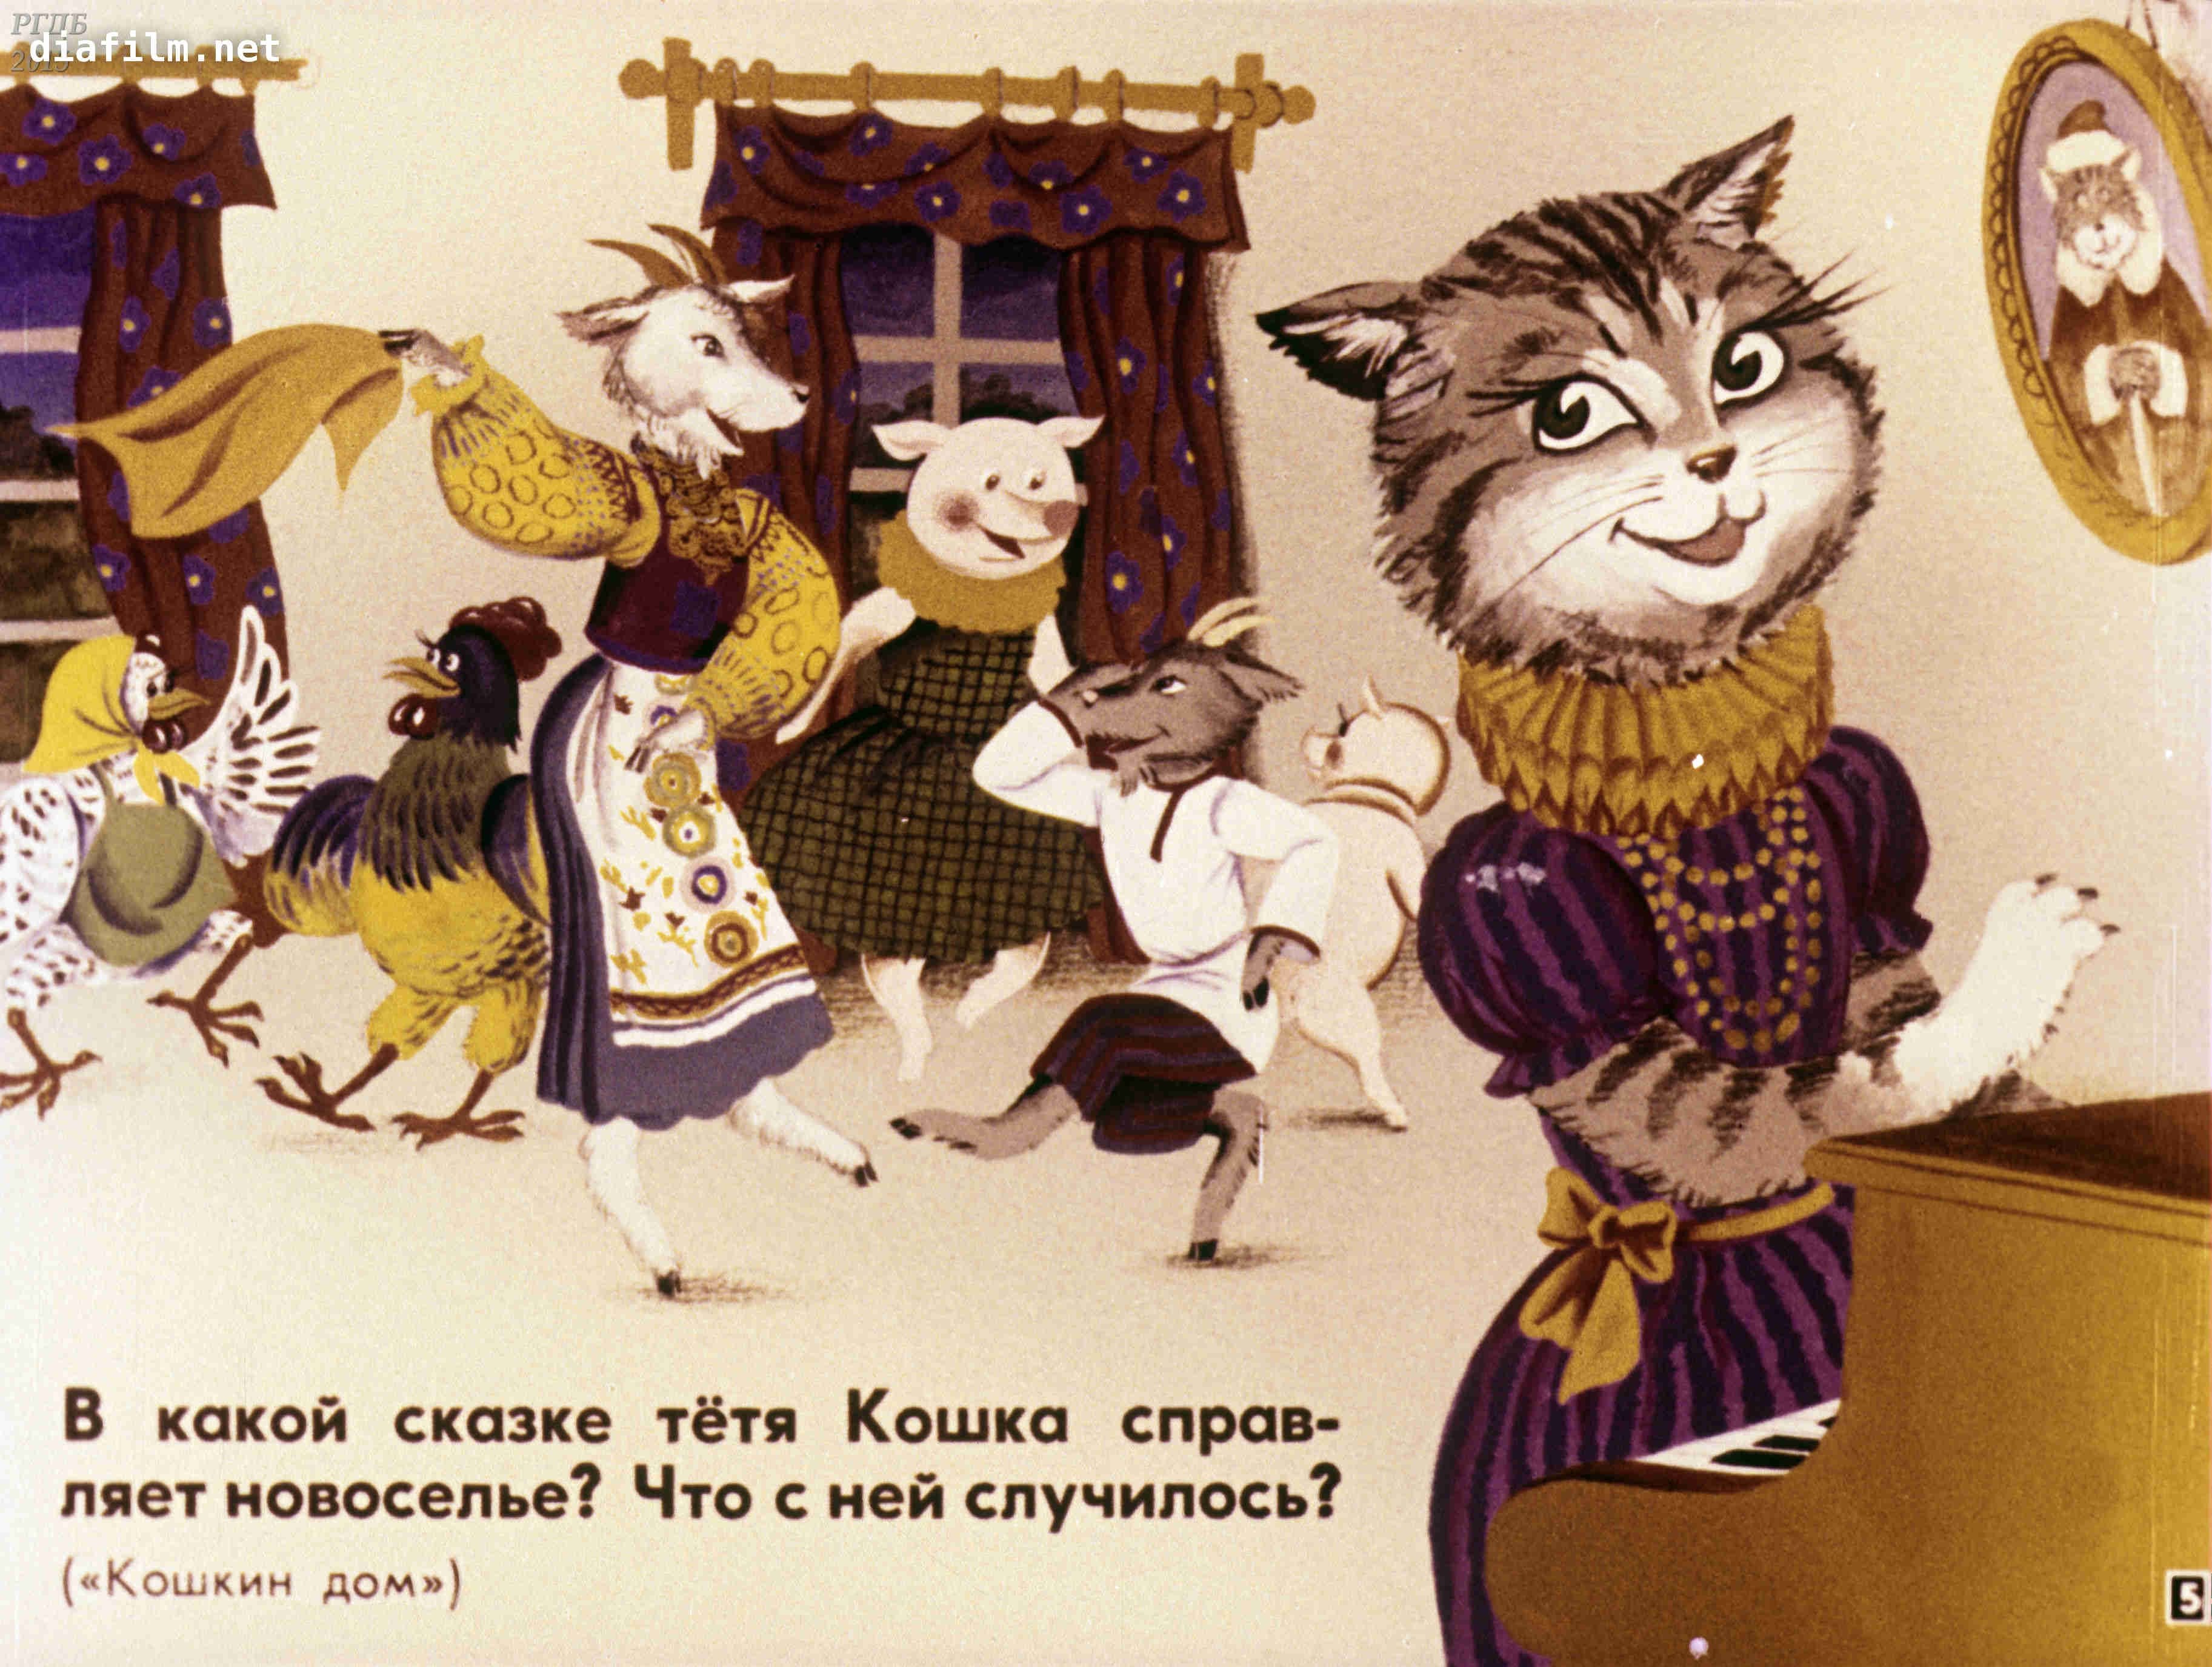 Поделки на тему сказки - 66 фото идей изделий по мотивам русских народных сказок